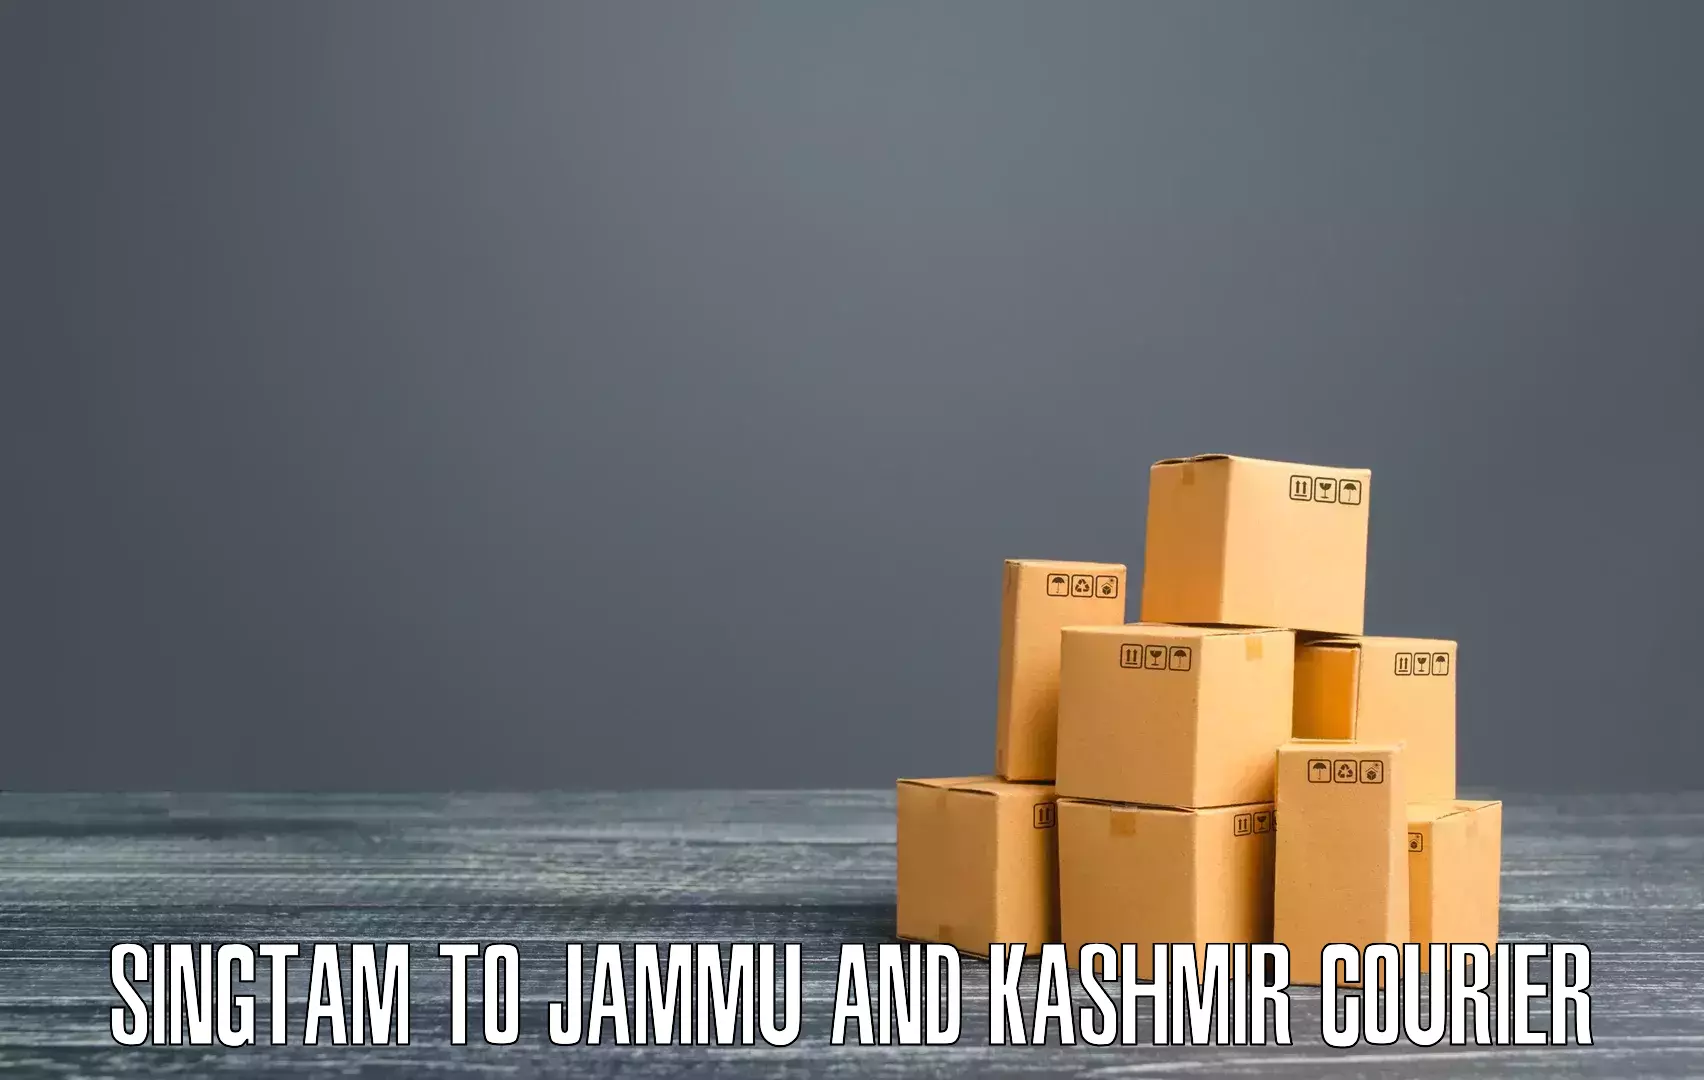 Ocean freight courier Singtam to Jammu and Kashmir